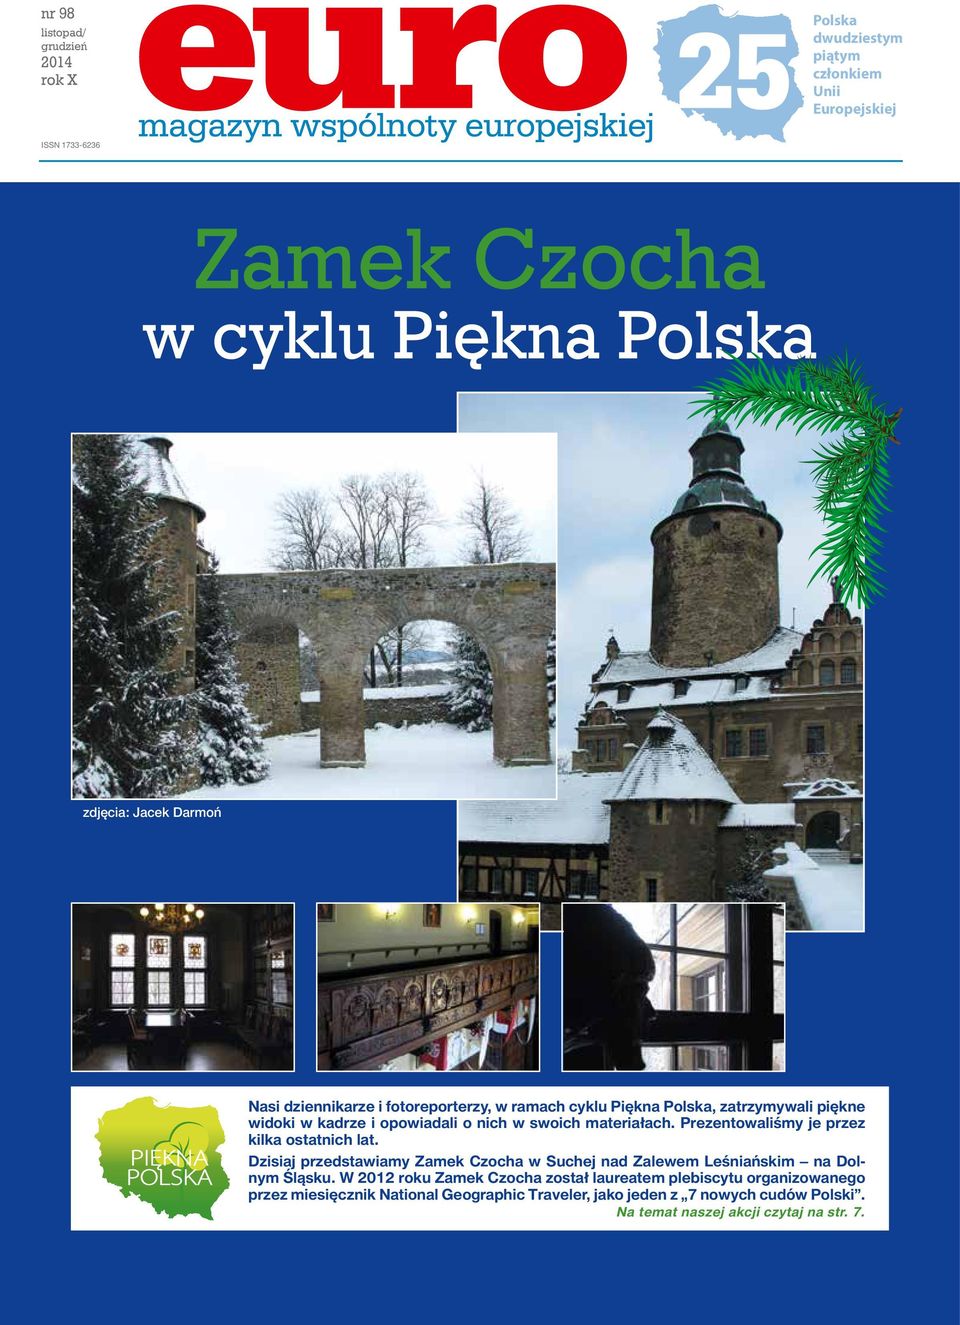 Prezentowaliśmy je przez kilka ostatnich lat. Dzisiaj przedstawiamy Zamek Czocha w Suchej nad Zalewem Leśniańskim na Dolnym Śląsku.